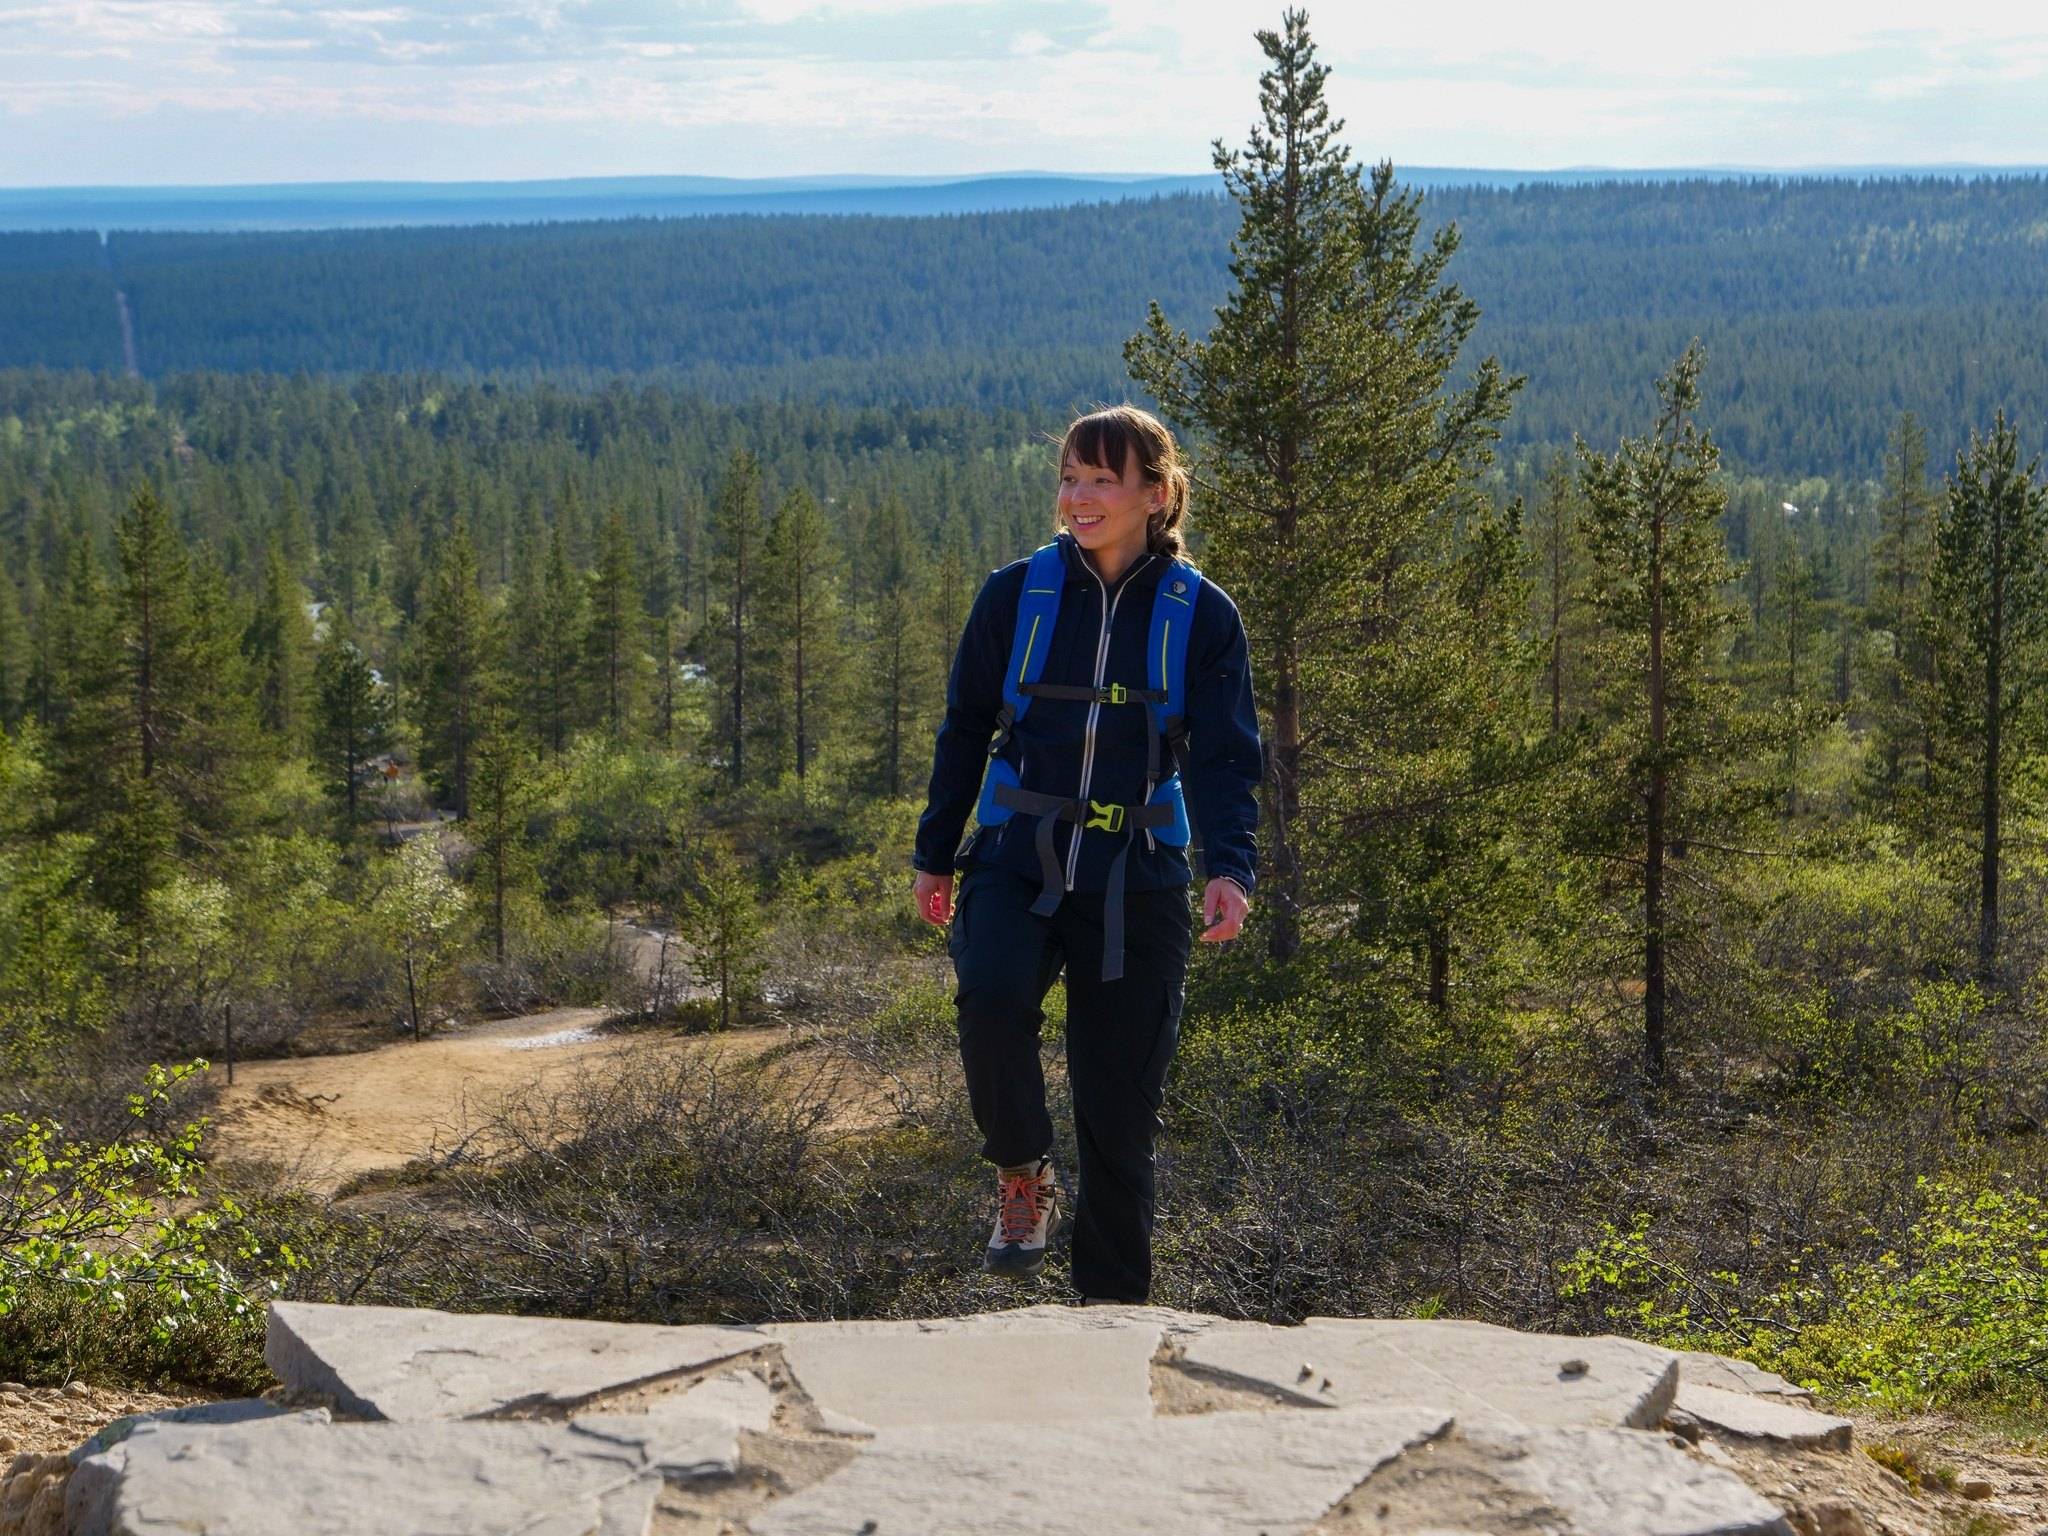 Día en la Tundra, Visitando el Parque Nacional UKK - Caminata y Sauna